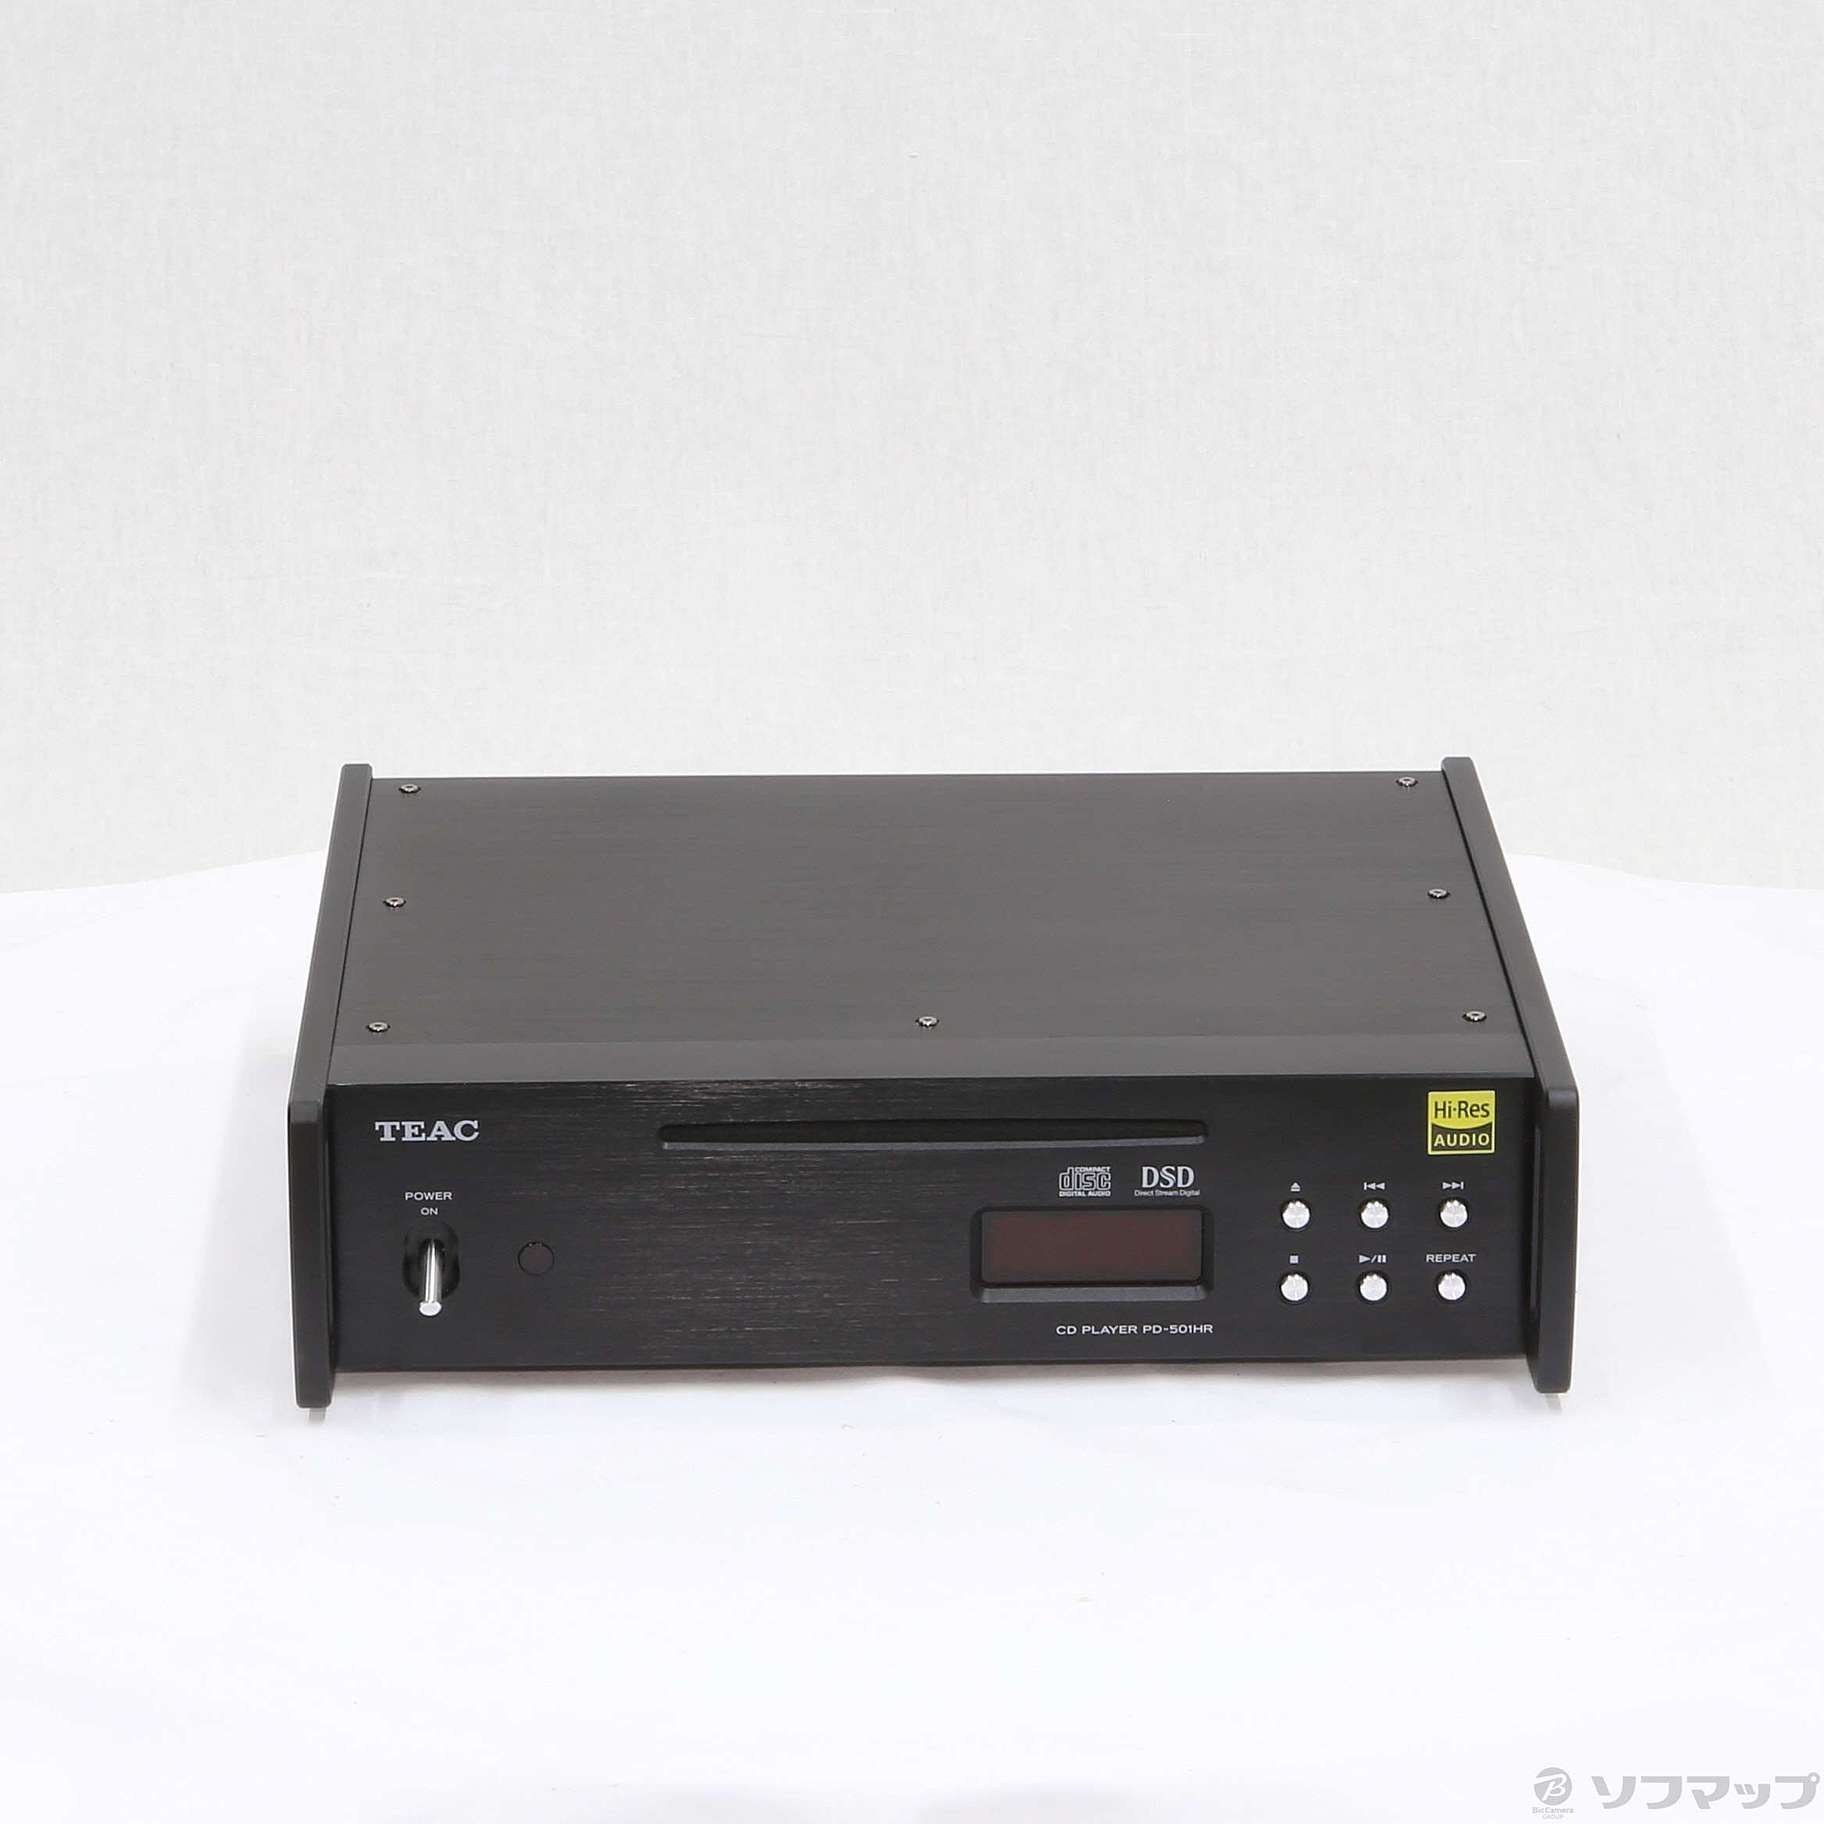 〔展示品〕 ハイレゾ対応CDプレーヤー PD-501HR ブラック PD-501HR-SE-B